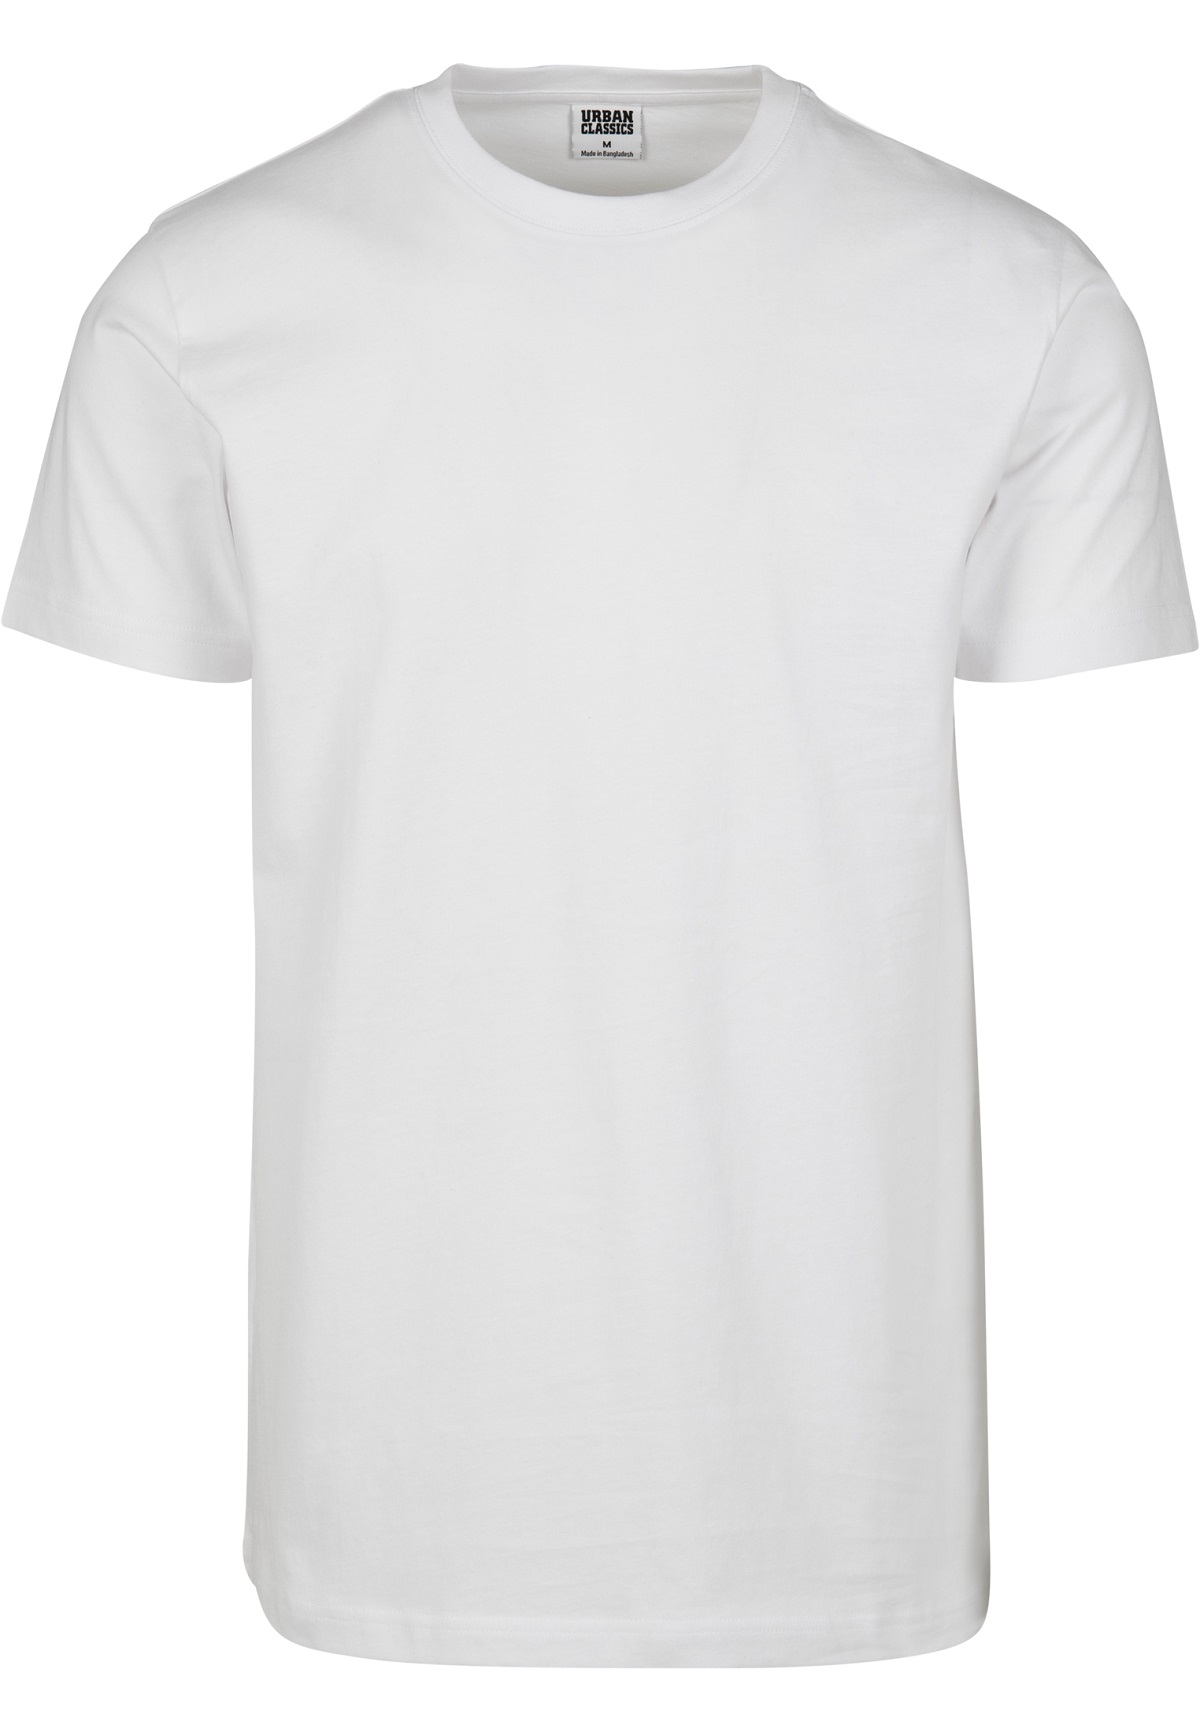 URBAN CLASSICS Basic T-Shirt weiß M